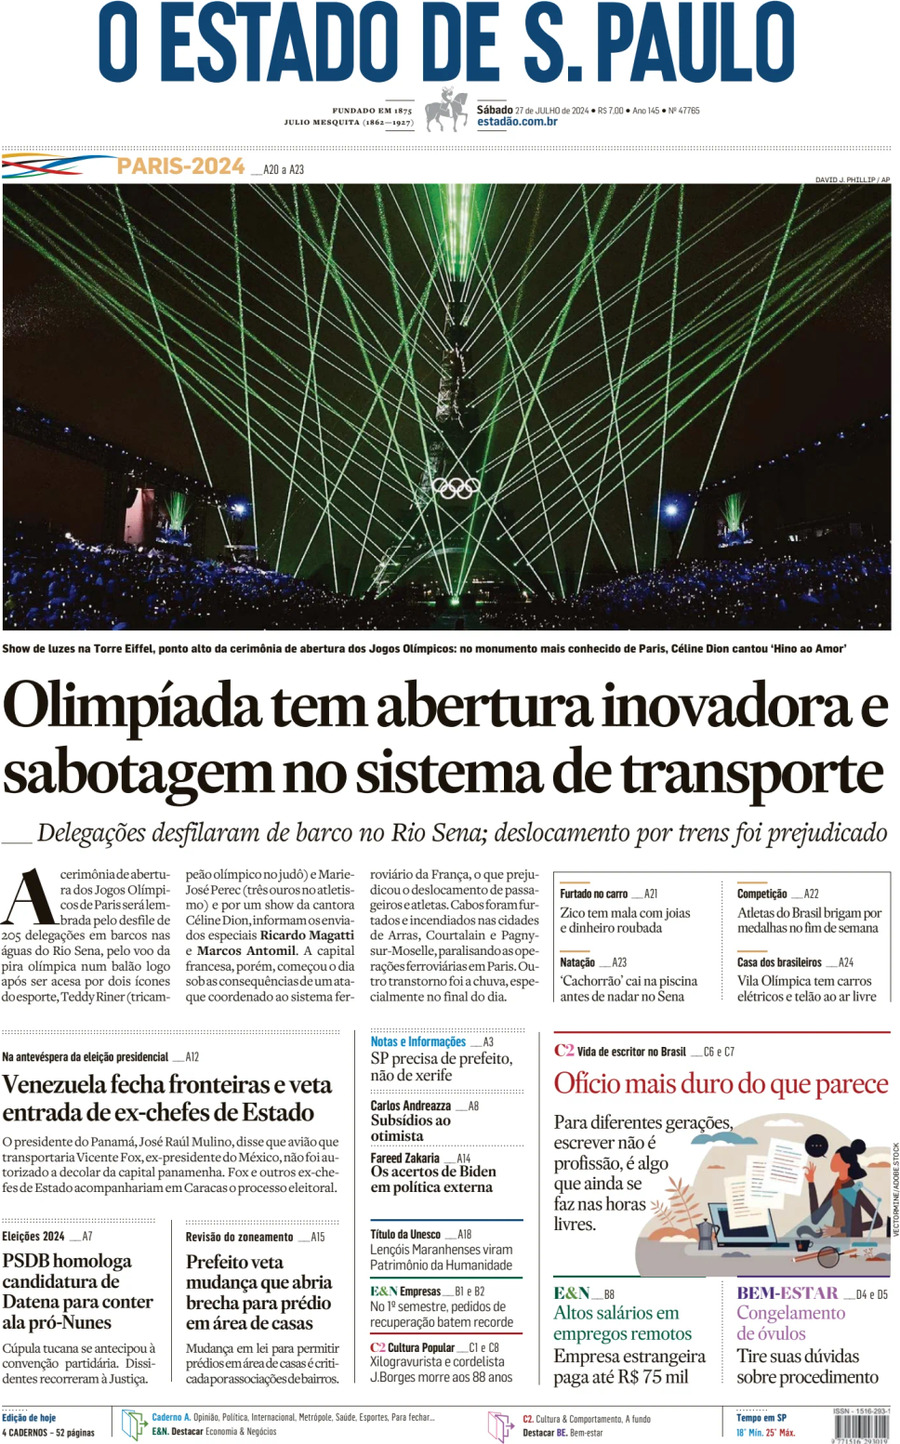 O Estado de S. Paulo - Front Page - 07/27/2024